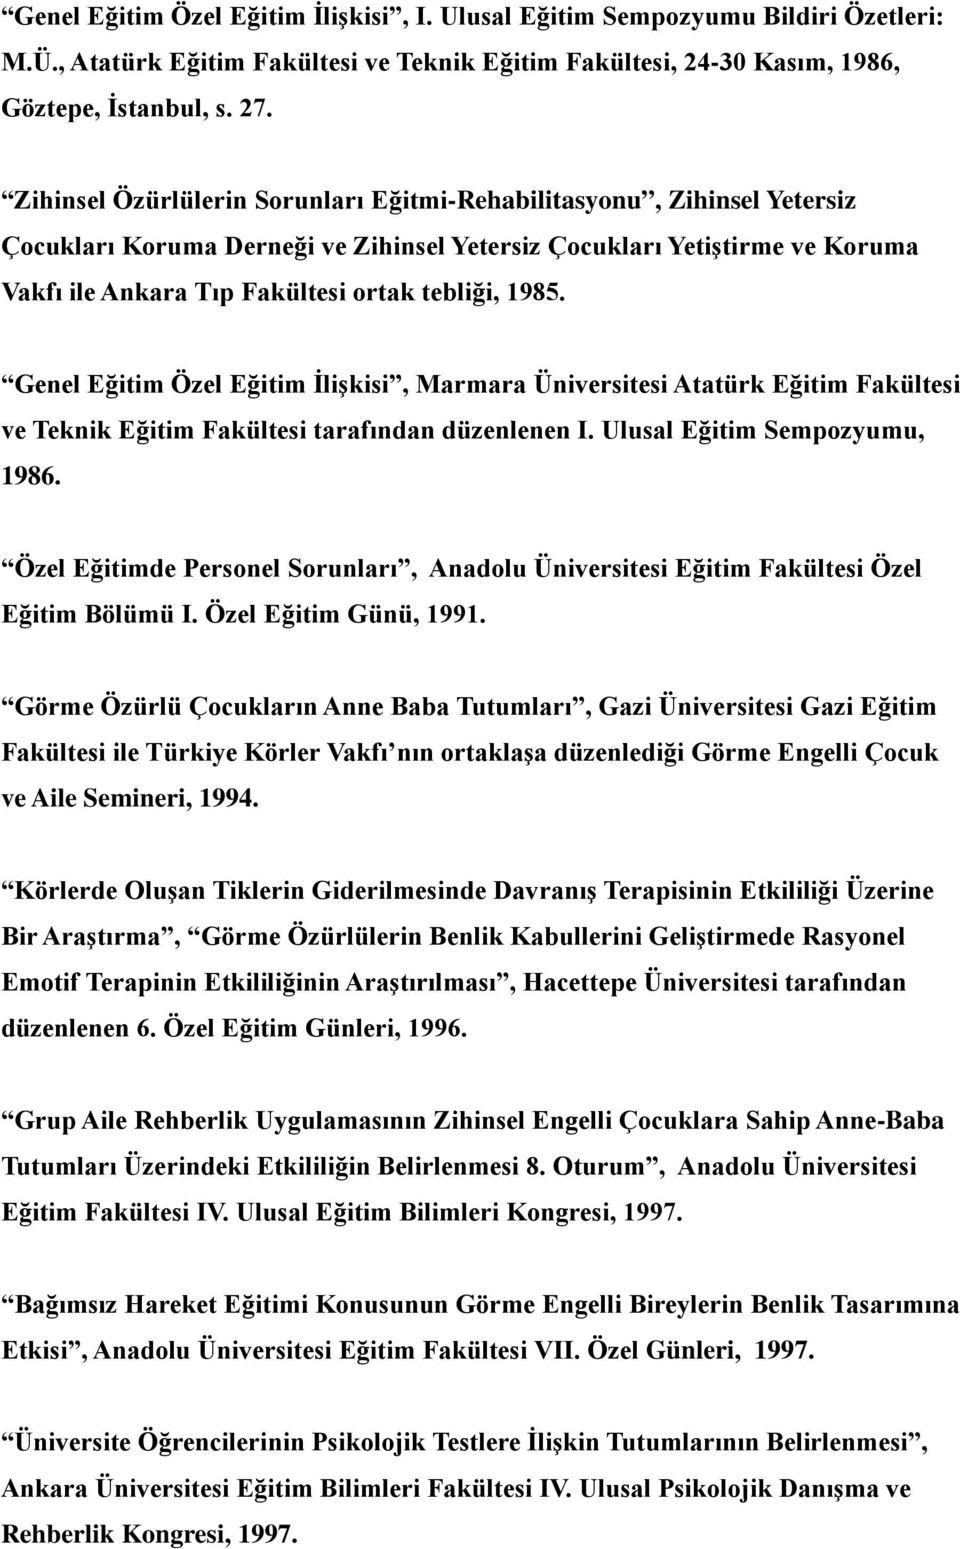 1985. Genel Eğitim Özel Eğitim İlişkisi, Marmara Üniversitesi Atatürk Eğitim Fakültesi ve Teknik Eğitim Fakültesi tarafından düzenlenen I. Ulusal Eğitim Sempozyumu, 1986.